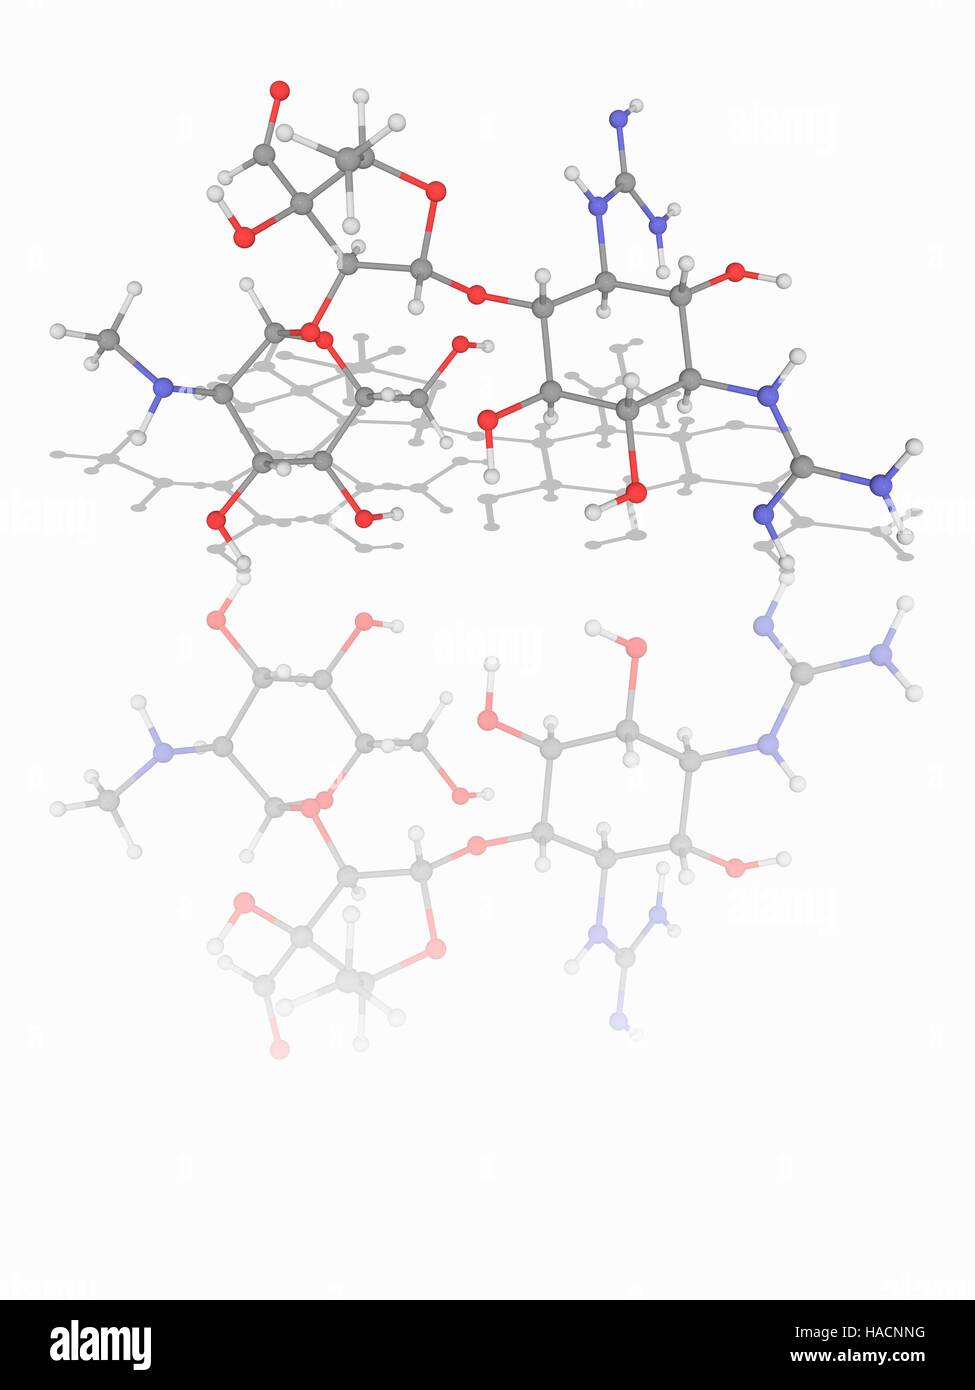 La streptomicina. Il modello molecolare del farmaco antibiotico streptomicina (C21.H39.N7.O12), una proteina inibitore di sintesi che è usato per il trattamento della tubercolosi. Gli atomi sono rappresentati da sfere e sono codificati a colori: carbonio (grigio), Idrogeno (bianco), Azoto (blu) e ossigeno (rosso). Illustrazione. Foto Stock